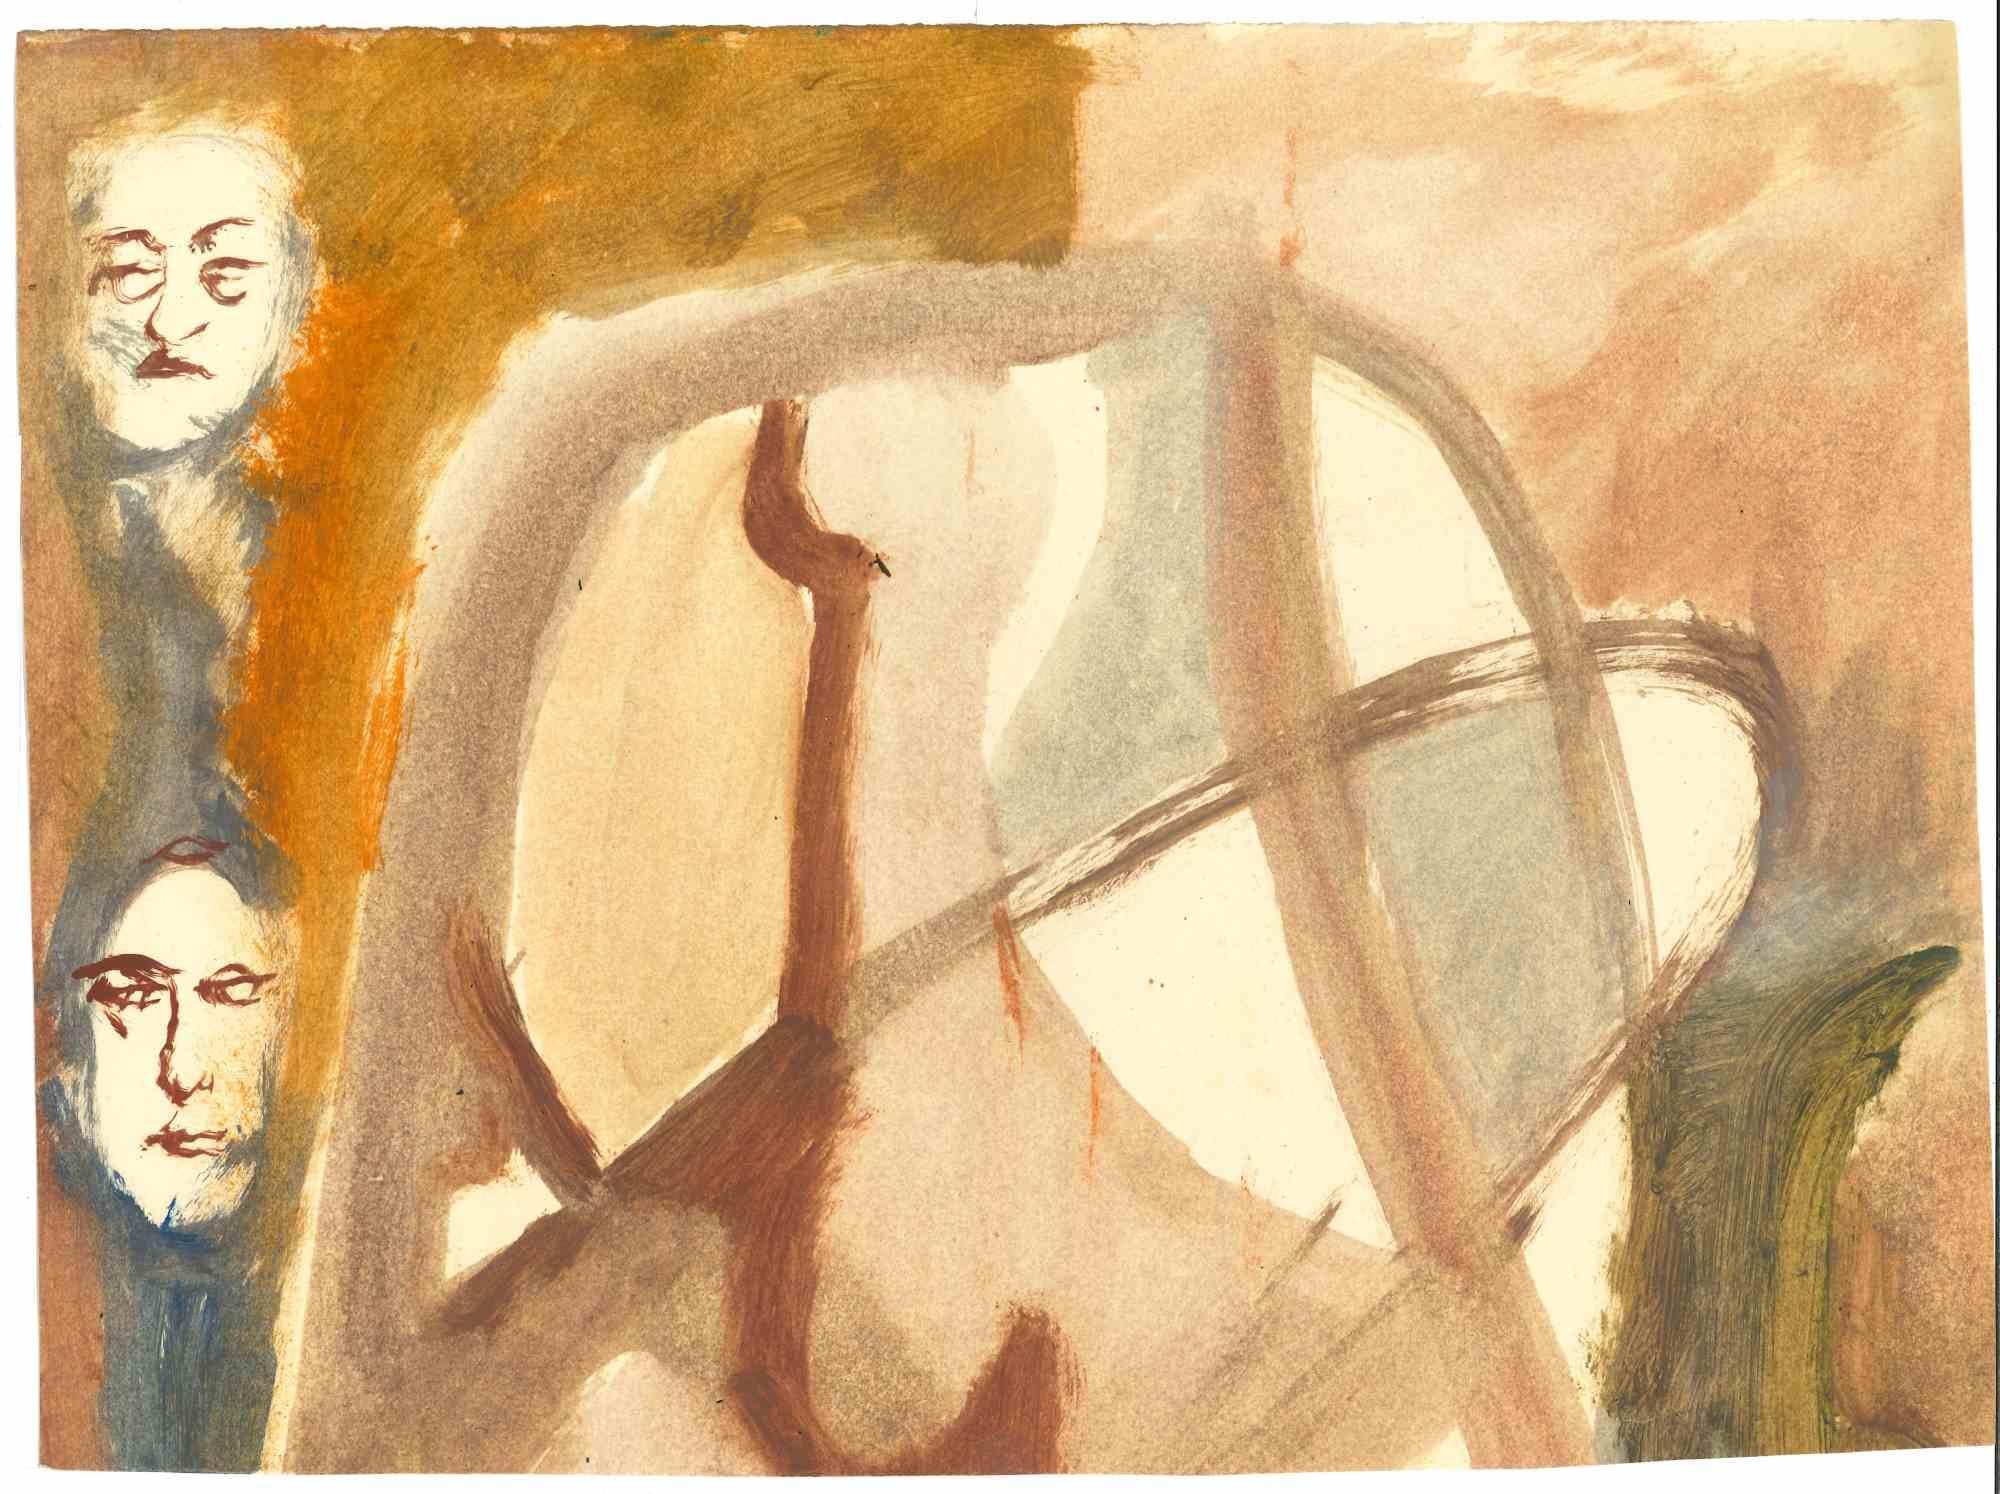 Meeting ist eine Tusche-, Kohle- und Aquarellzeichnung von Mino Maccari (1924-1989) aus der Mitte des 20. Jahrhunderts.

Handsigniert. Doppelseitige Zeichnung, auf Vorder- und Rückseite.

Guter Zustand mit leichten Stockflecken.

Mino Maccari